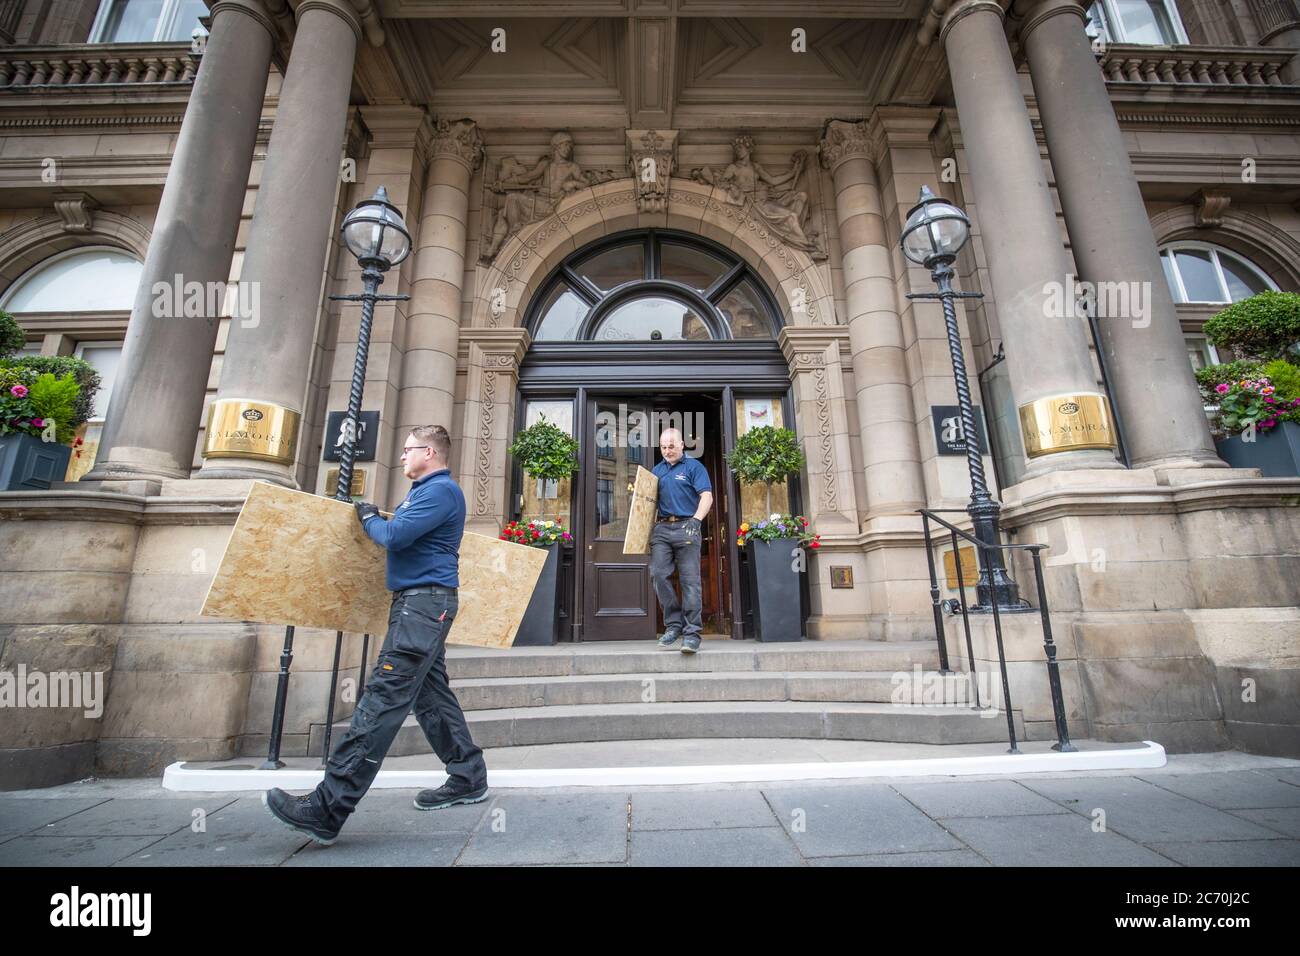 Les membres de l'équipe de maintenance du Balmoral, Édimbourg, retirent les panneaux de la porte d'entrée, les hôtels se préparant à la réouverture le mois prochain, alors que l'Écosse se prépare à lever d'autres restrictions de verrouillage du coronavirus. Banque D'Images